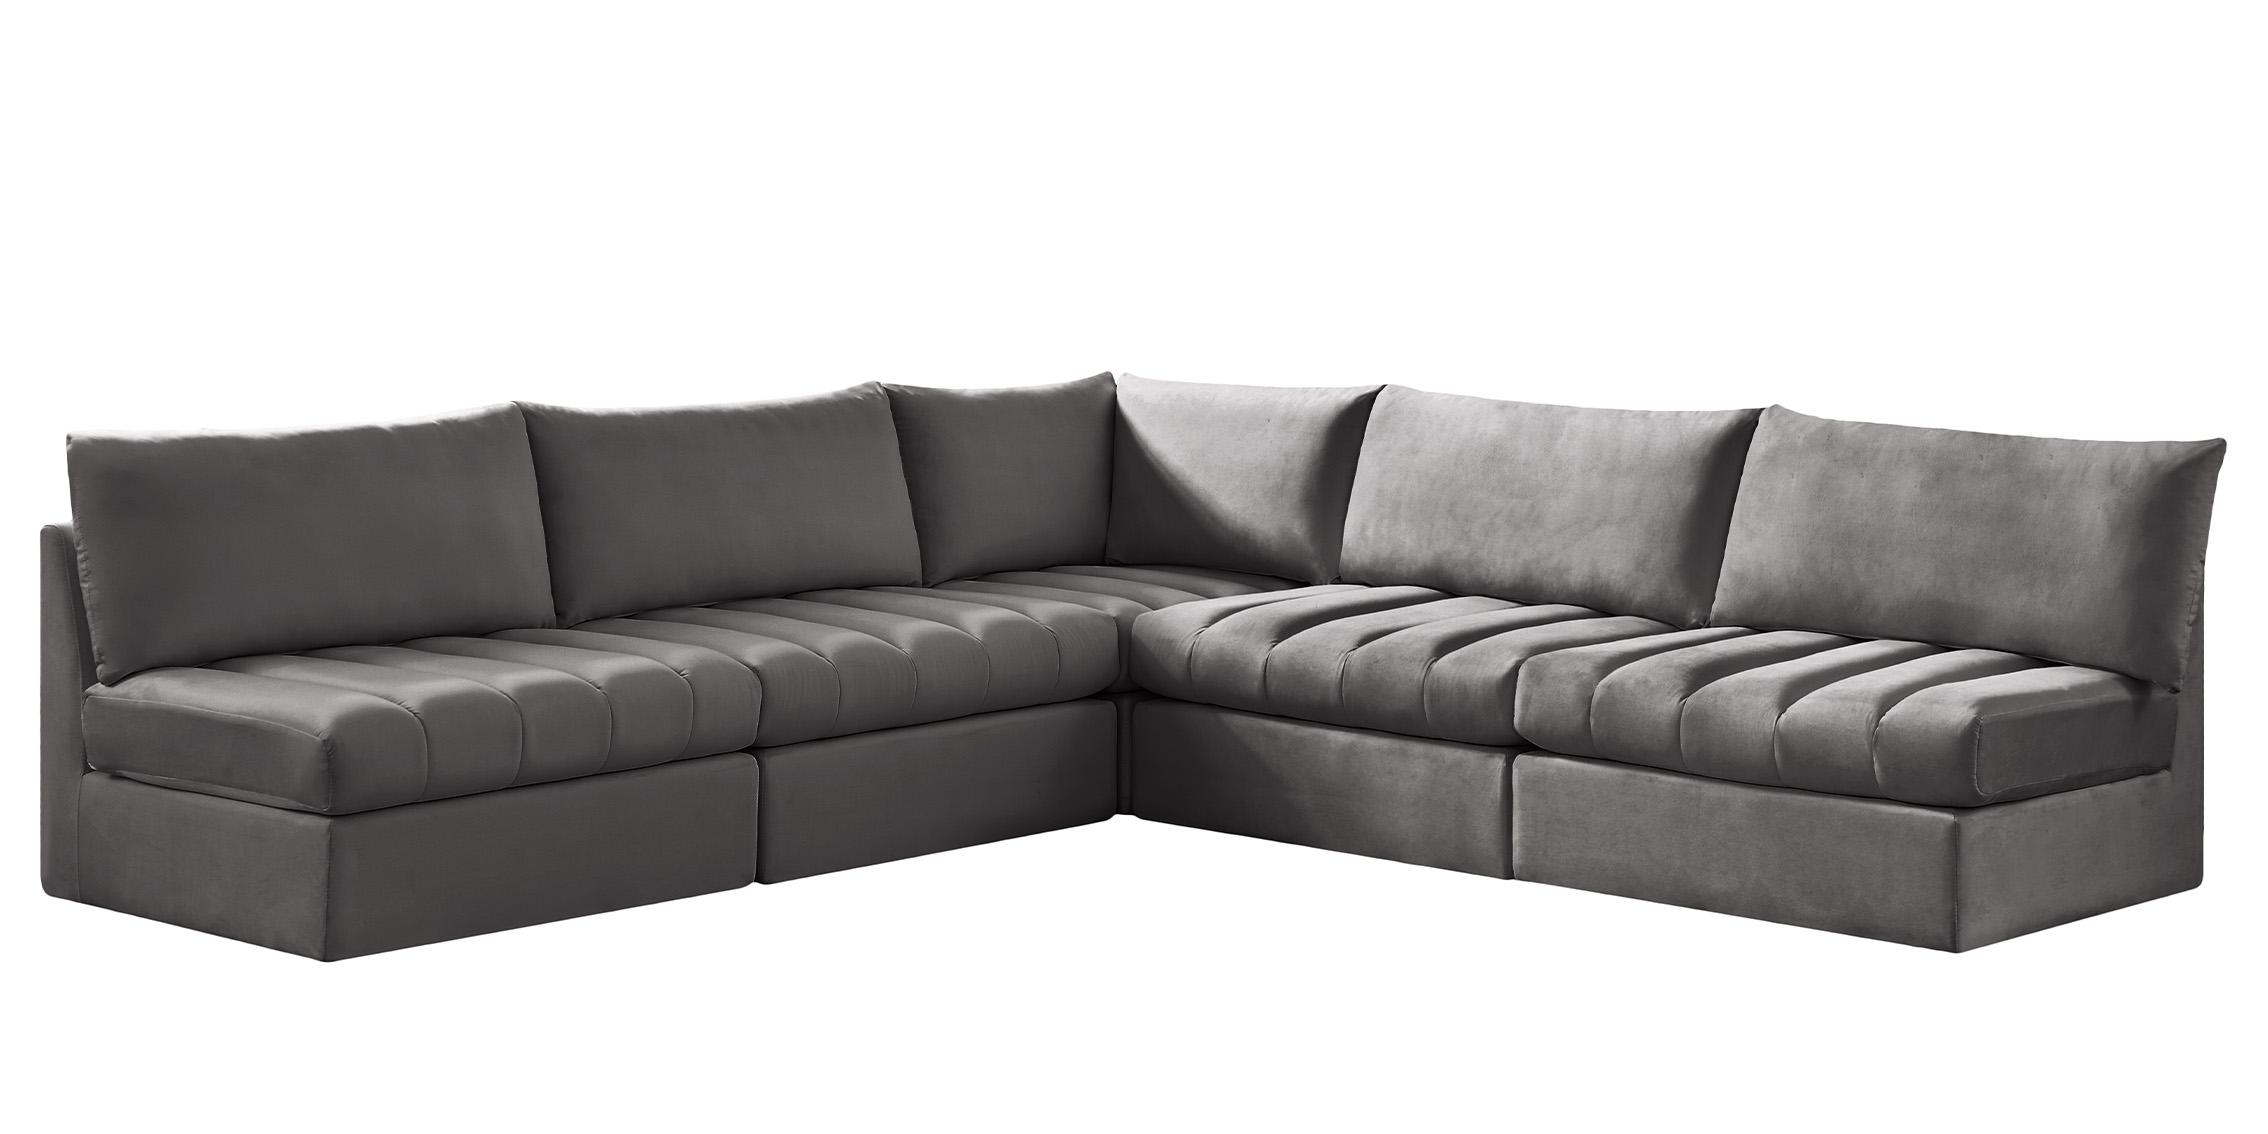 Meridian Furniture JACOB 649Grey-Sec5B Modular Sectional Sofa